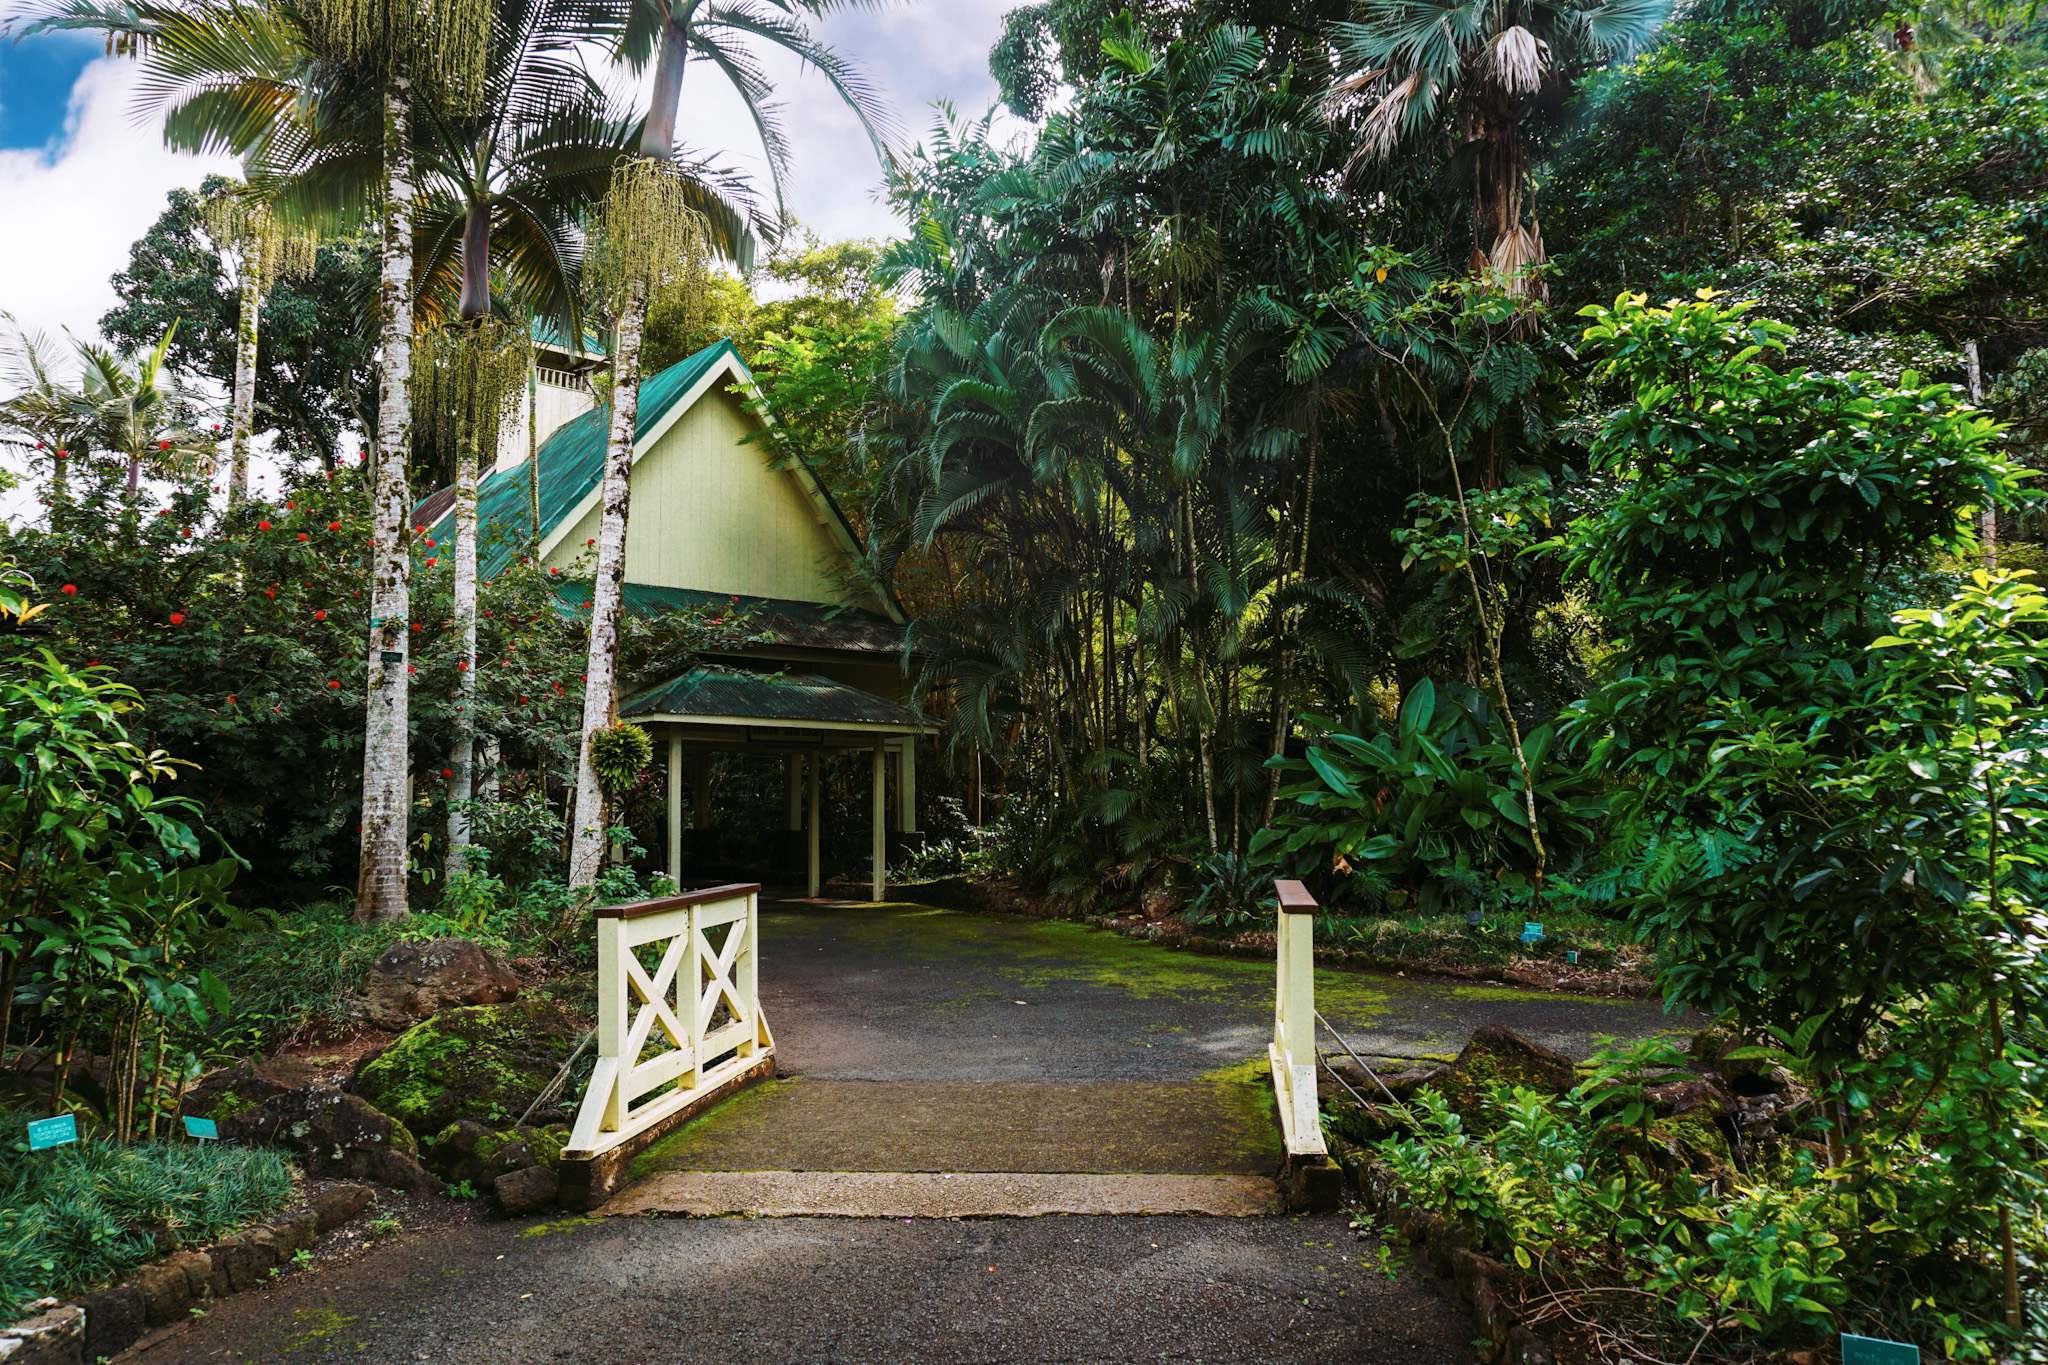 Entrance to botanical garden